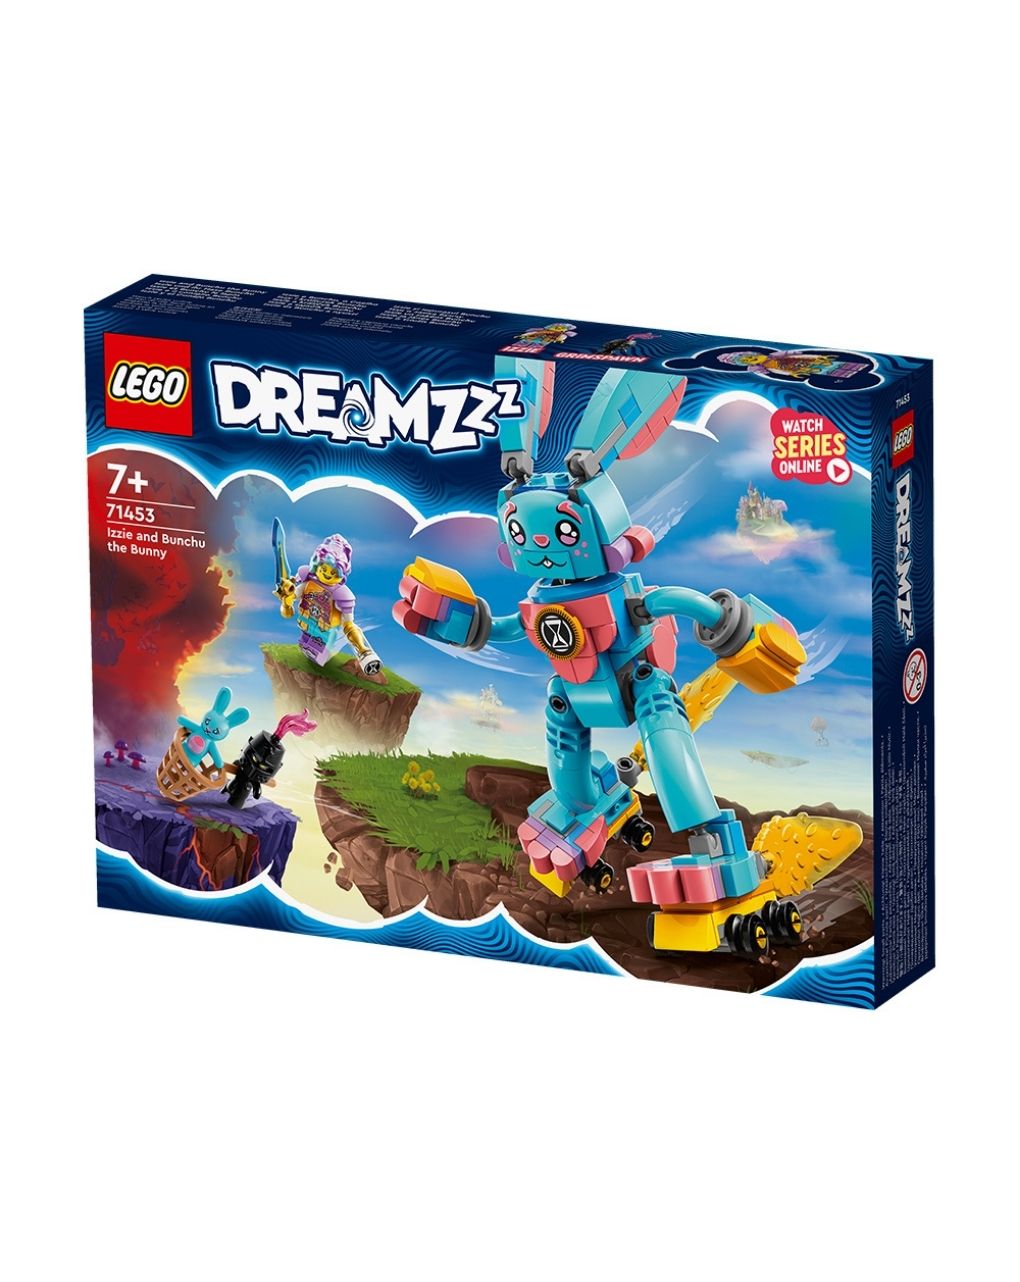 Lego dreamzzz izzie και bunchu το κουνέλι 71453 - Lego, LEGO DREAMZZZ